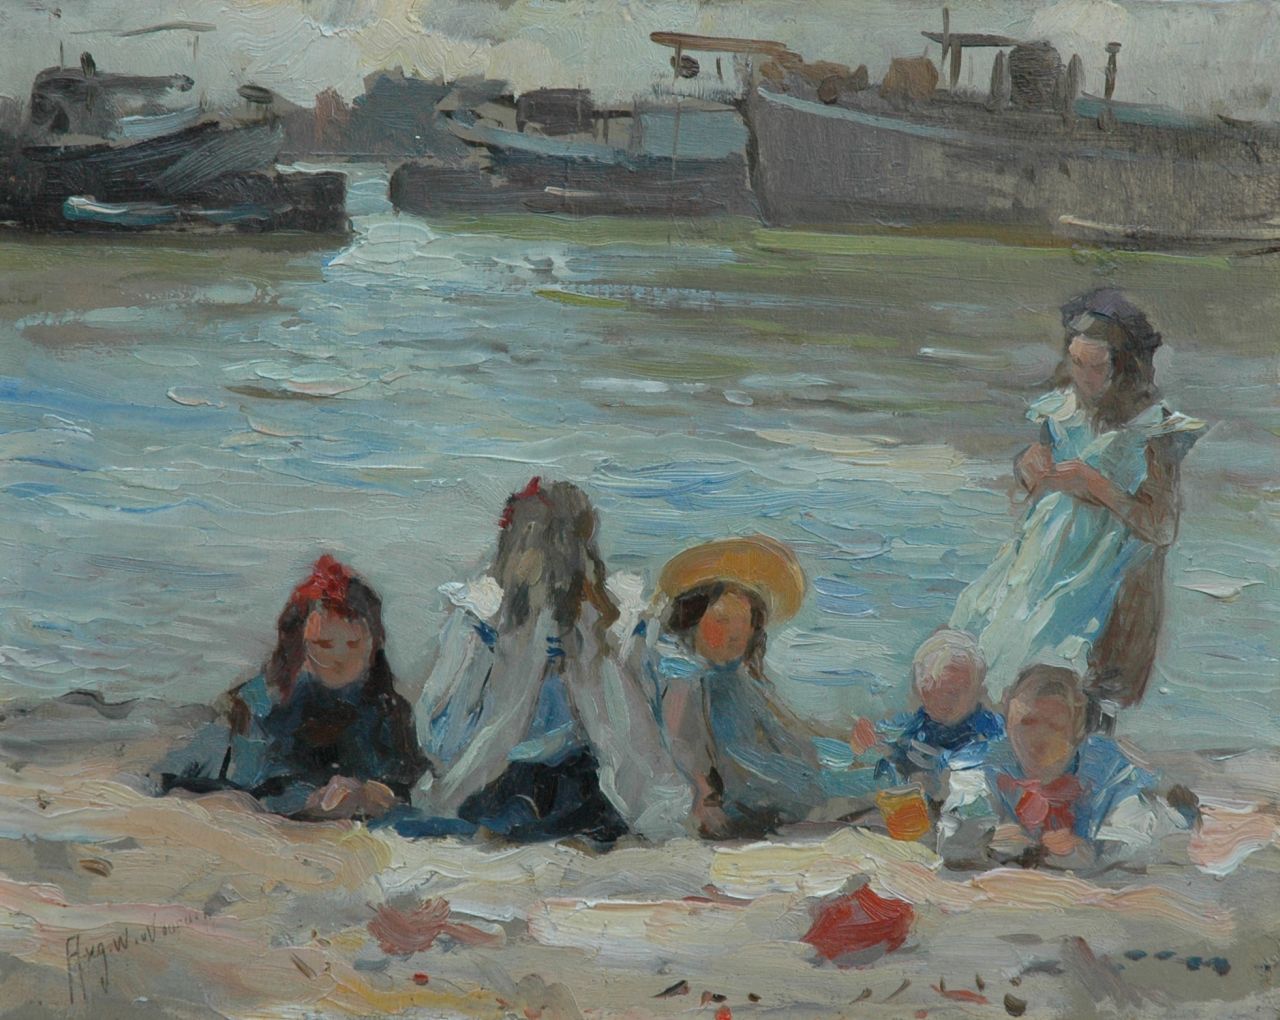 Voorden A.W. van | August Willem van Voorden, Spelende kinderen op de oever, olieverf op paneel 27,2 x 34,2 cm, gesigneerd linksonder